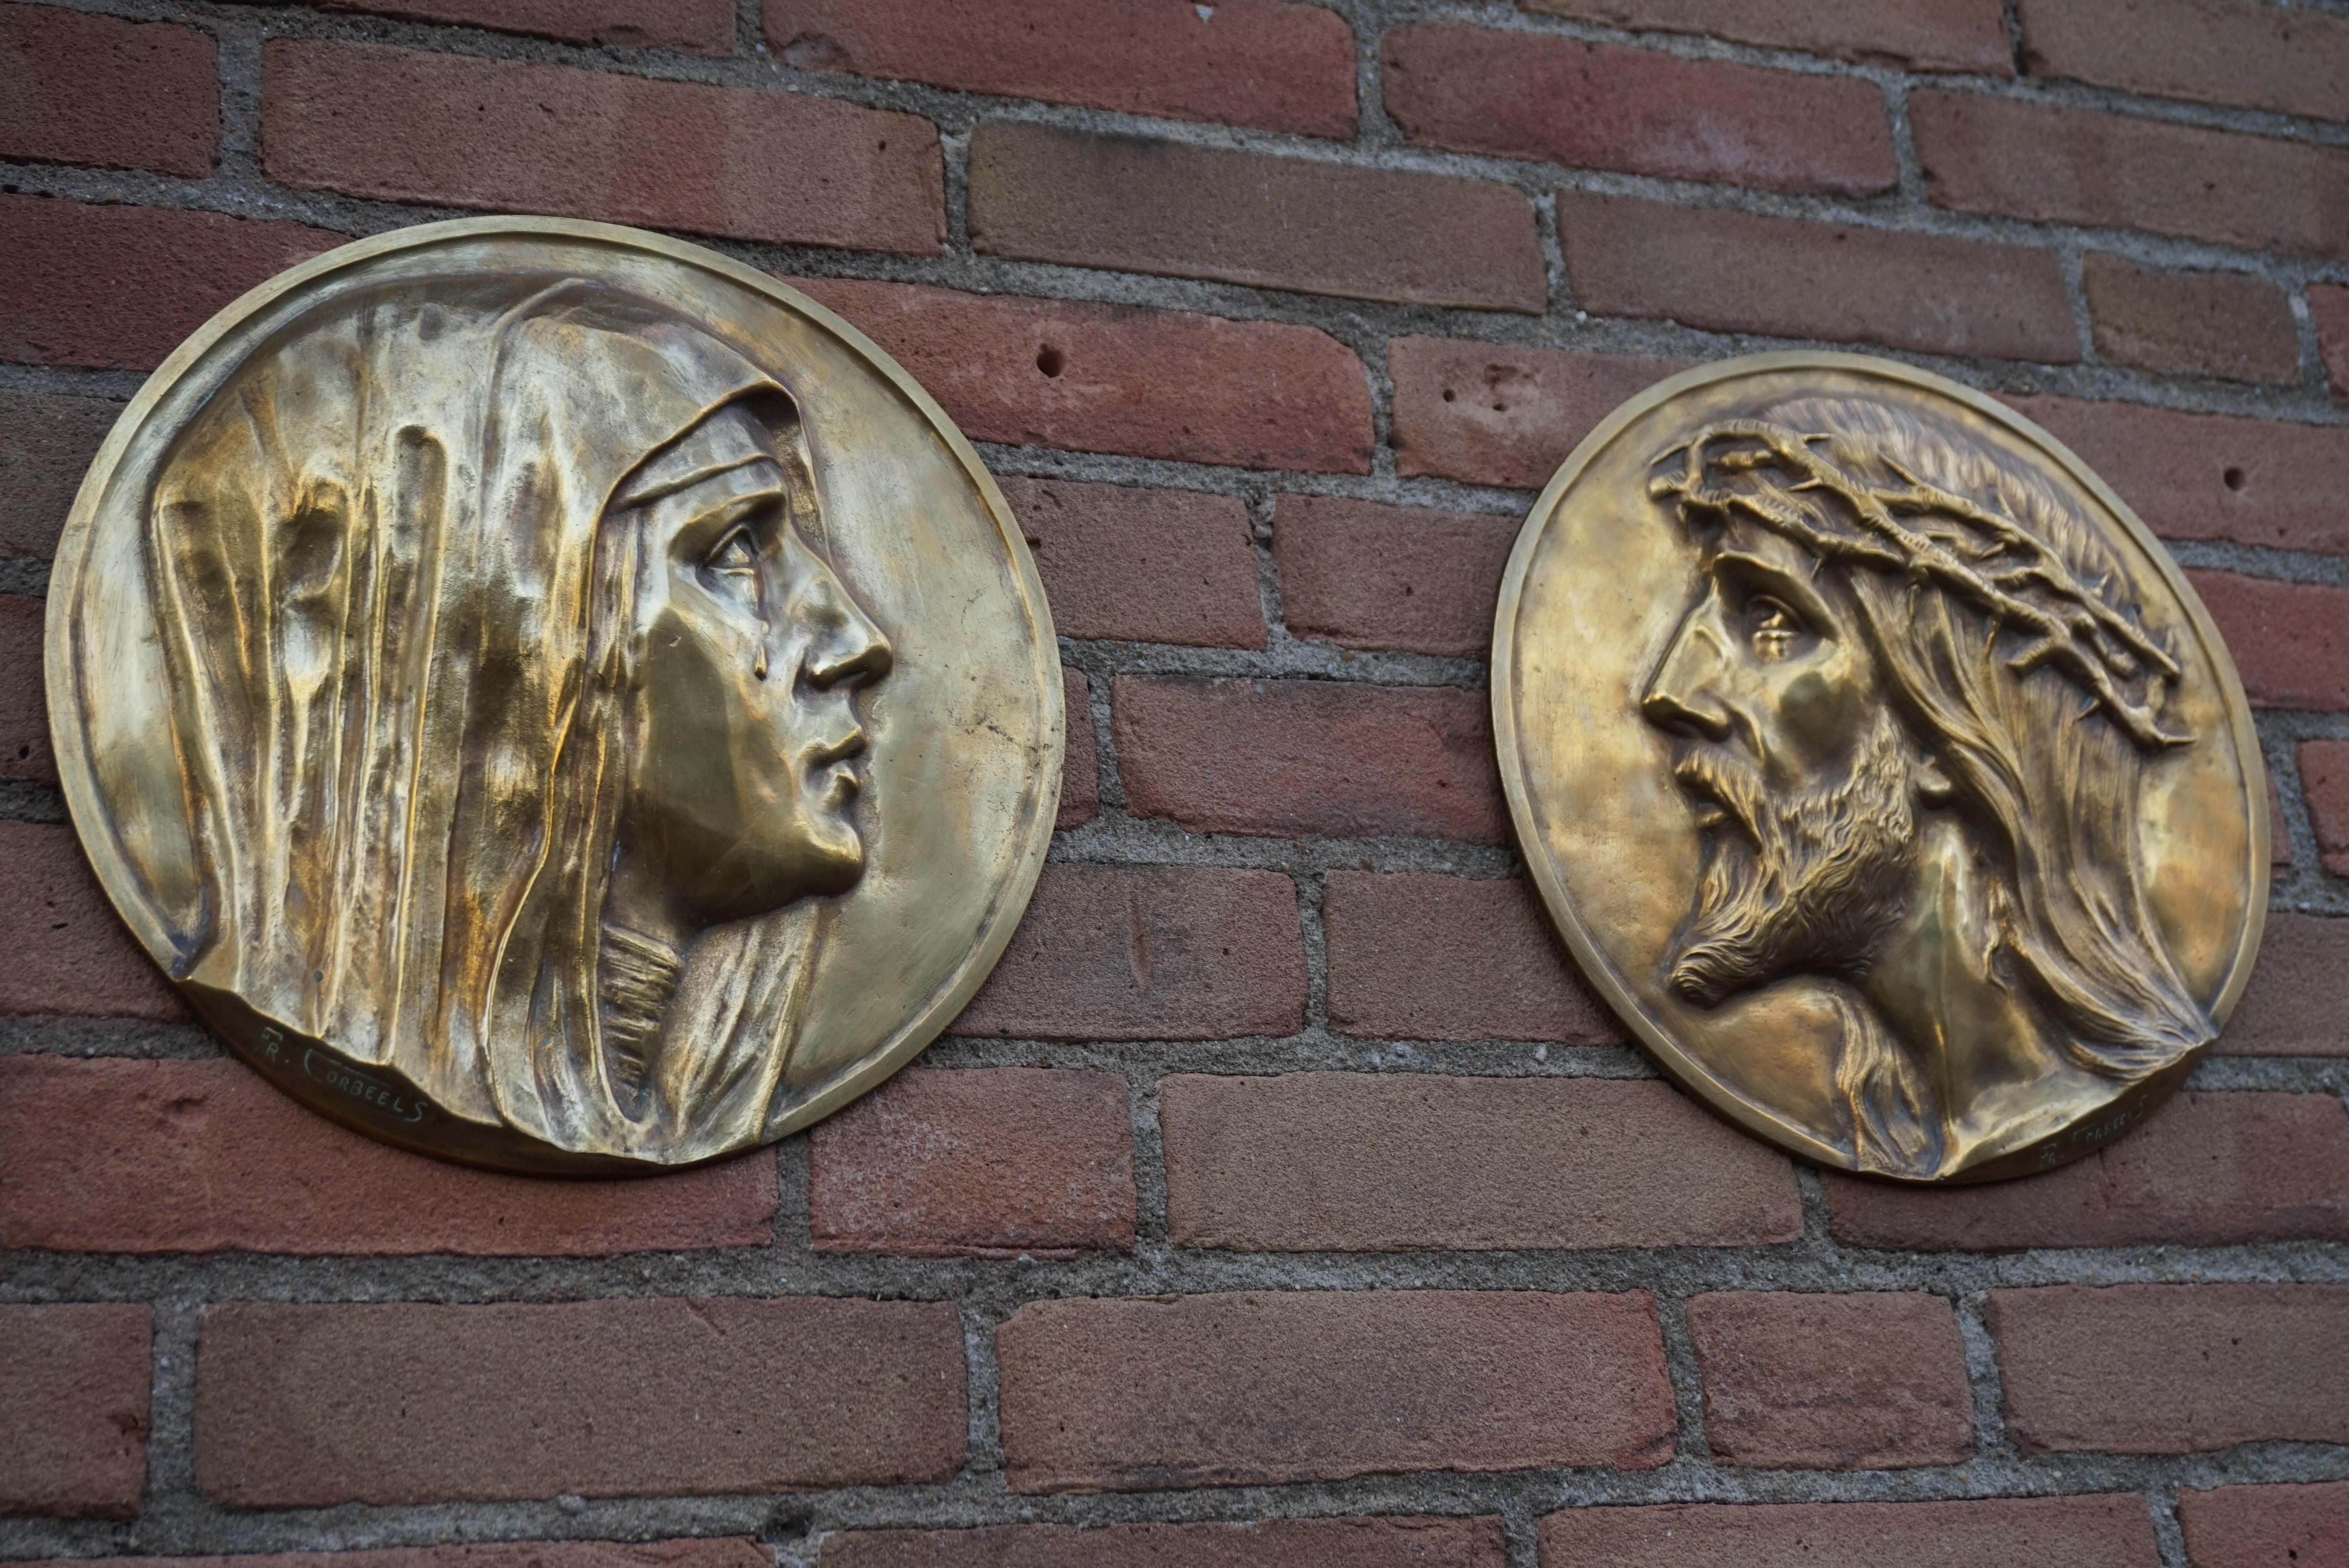 Rare paire de plaques en bronze du début des années 1900 par Fr. Corbeels (1888-1956).

Cette paire de plaques murales en bronze est une autre de nos récentes trouvailles. Trouver des œuvres d'art de cet habile sculpteur belge est un véritable défi